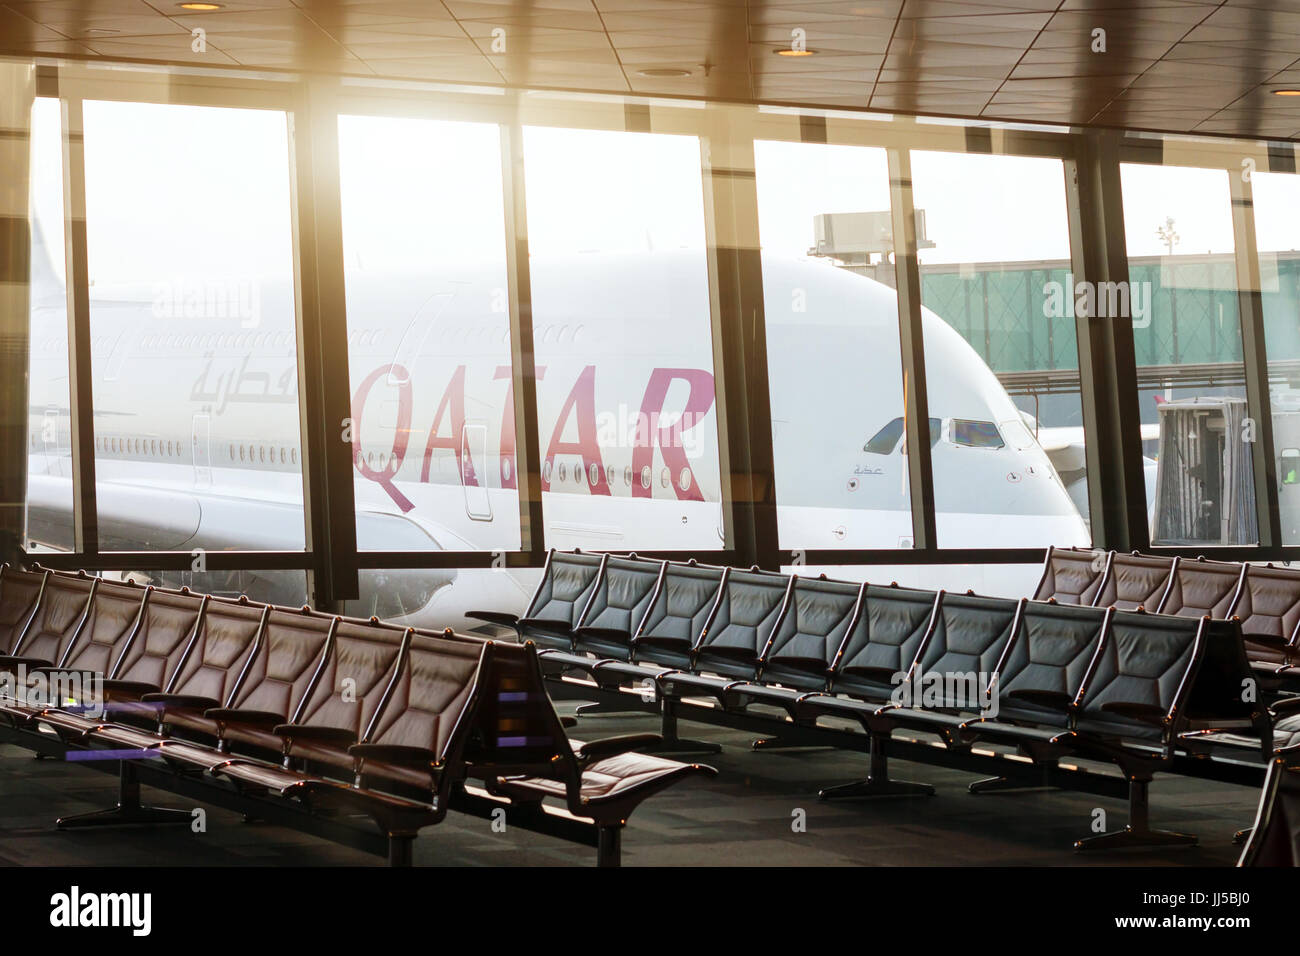 Doha, Katar - 25. April 2017: Flugzeug von Qatar Airways in den internationalen Flughafen von Doha Stockfoto